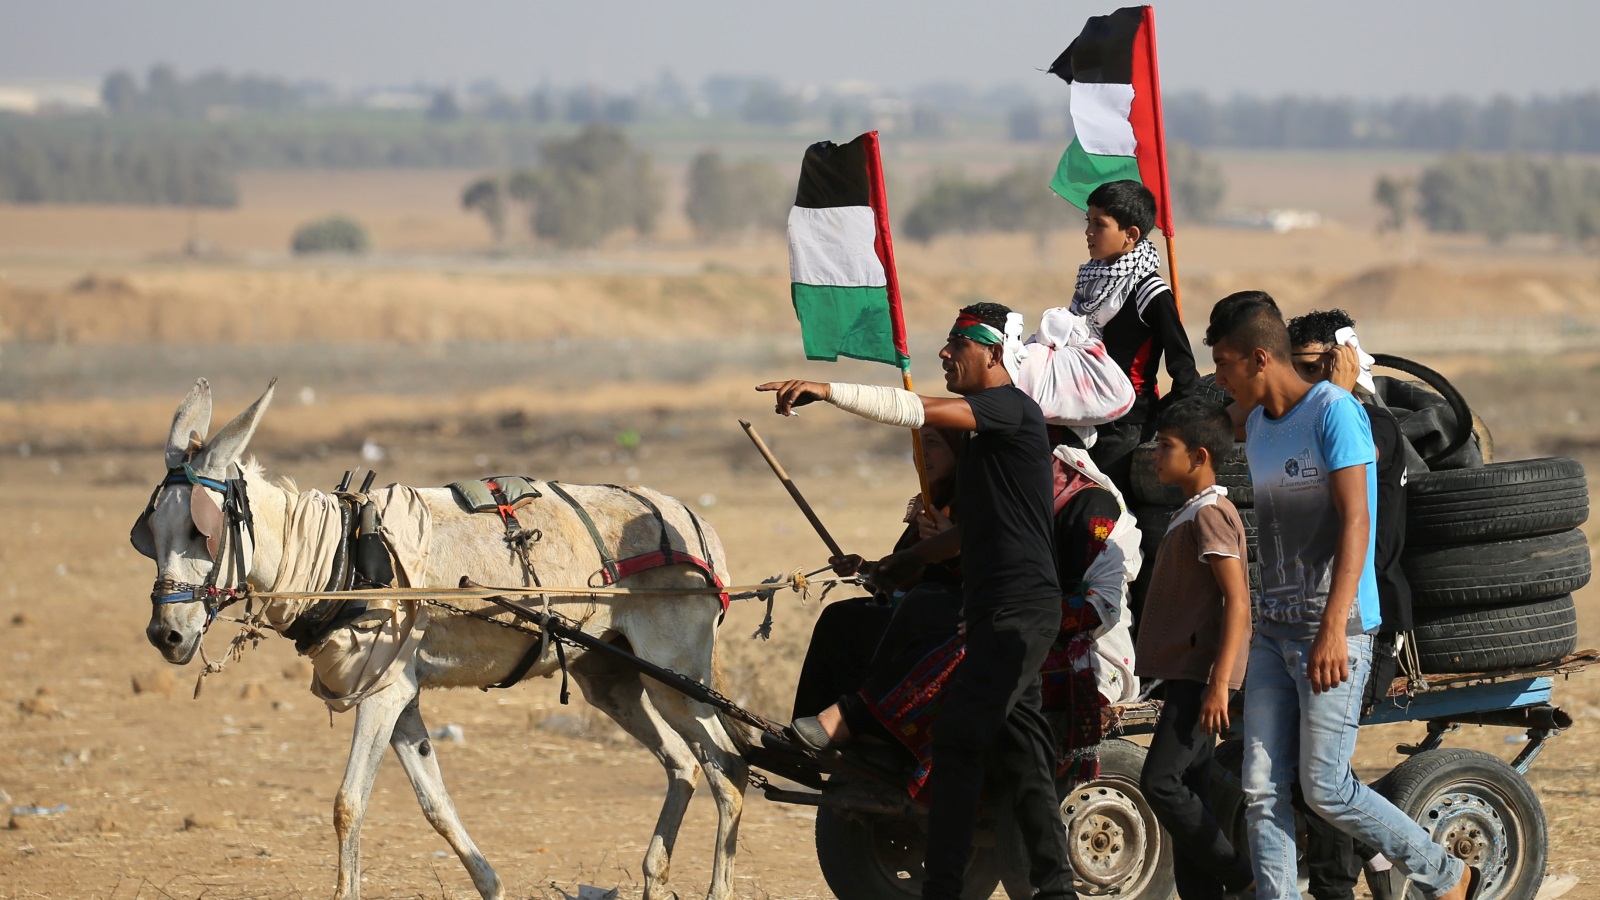 ‪فلسطينيون ينقلون إطارات لحرقها على السياج الحدودي في غزة‬  فلسطينيون ينقلون إطارات لحرقها على السياج الحدودي في غزة (رويترز)